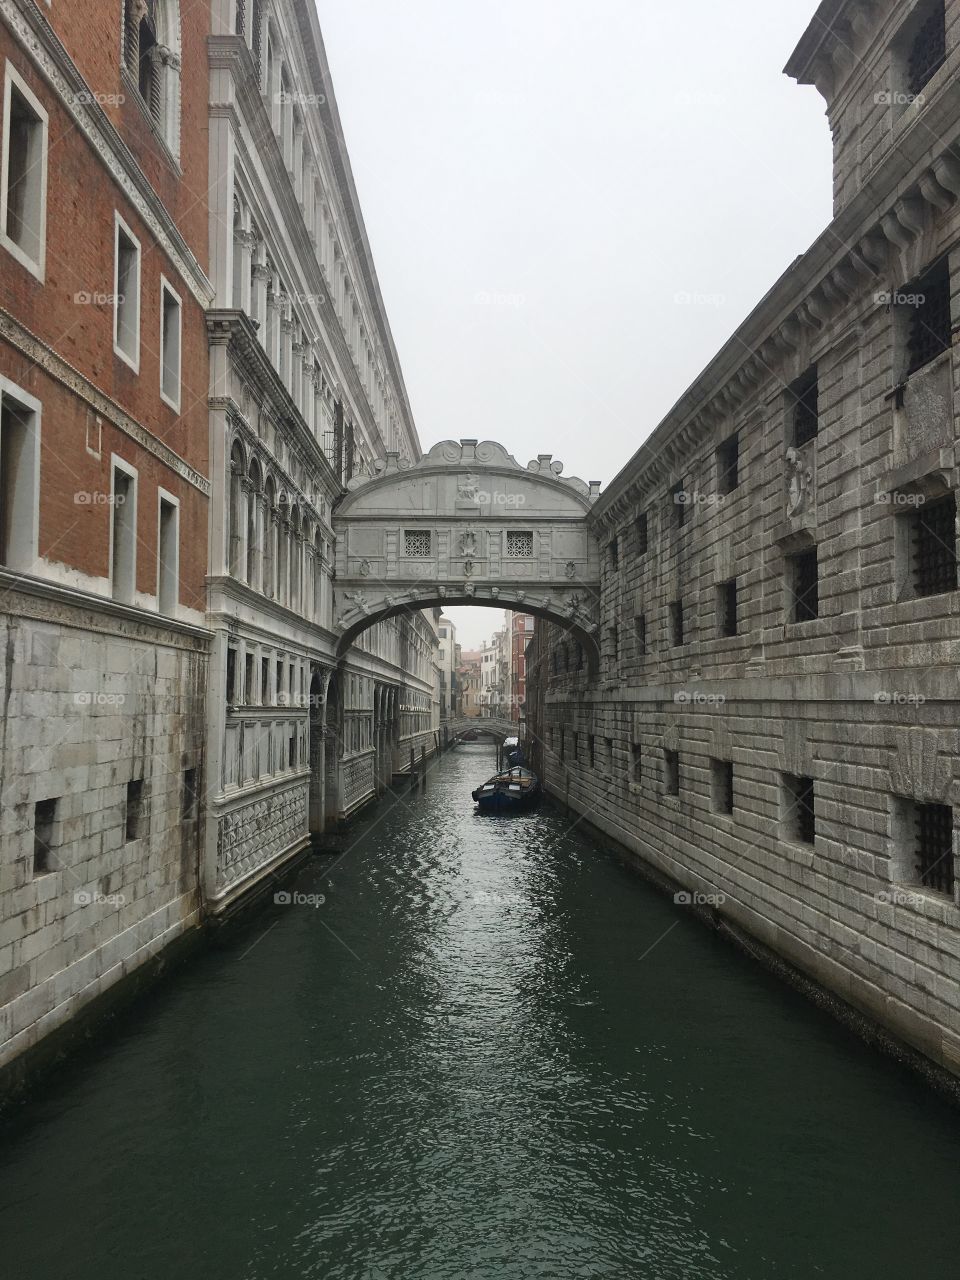 Bridge of Sighs, Venice 